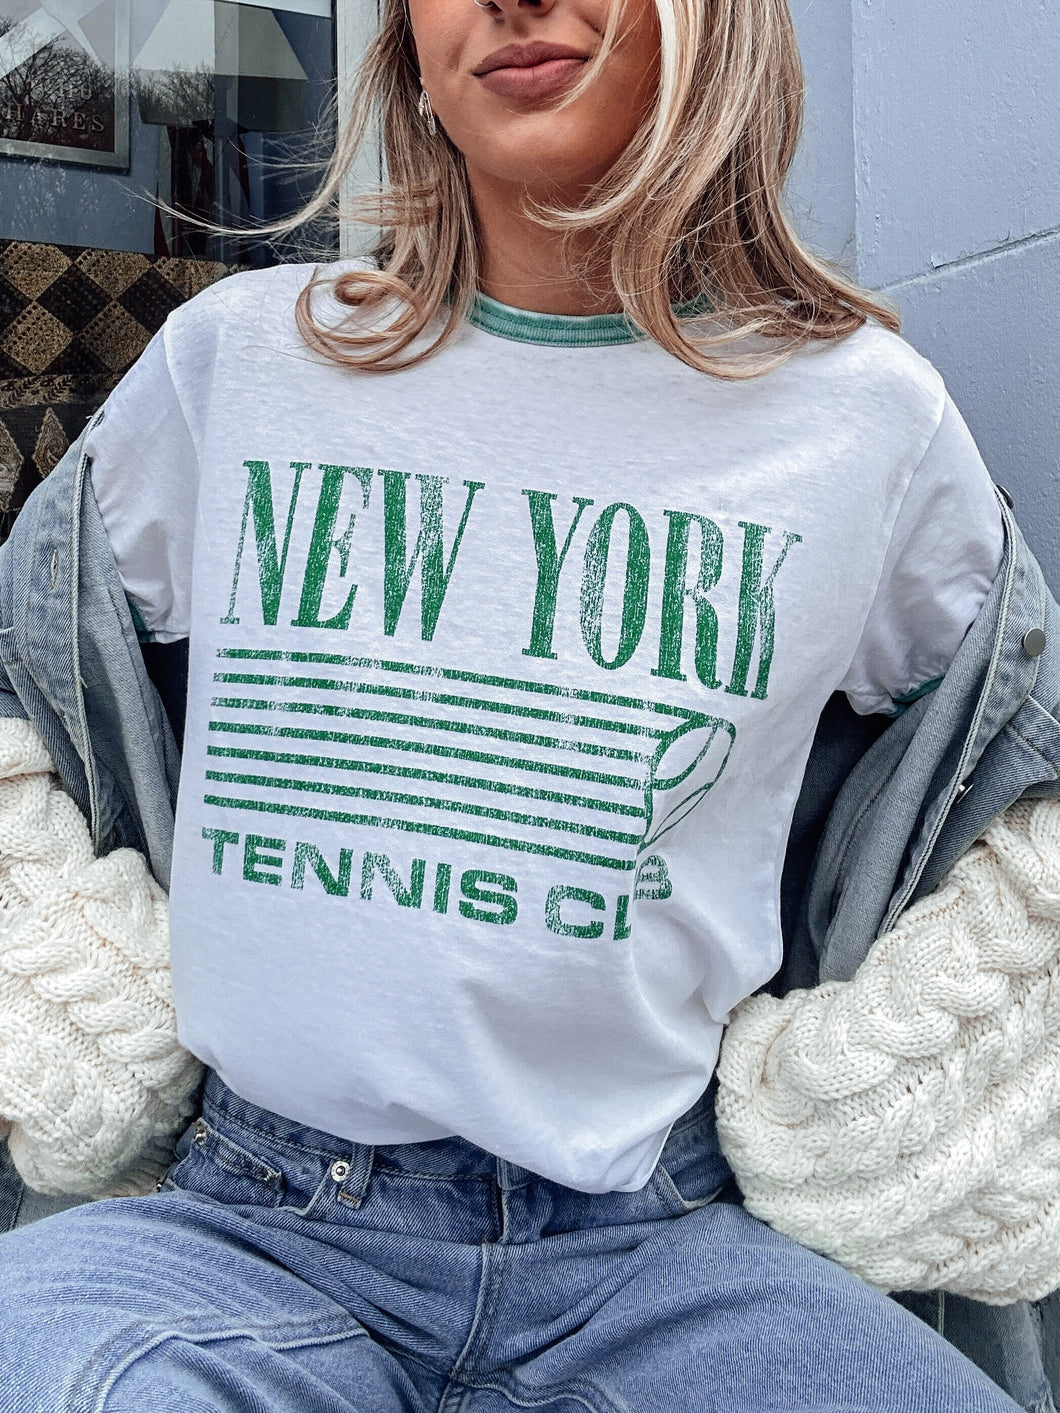 NY Tennis Club Tee